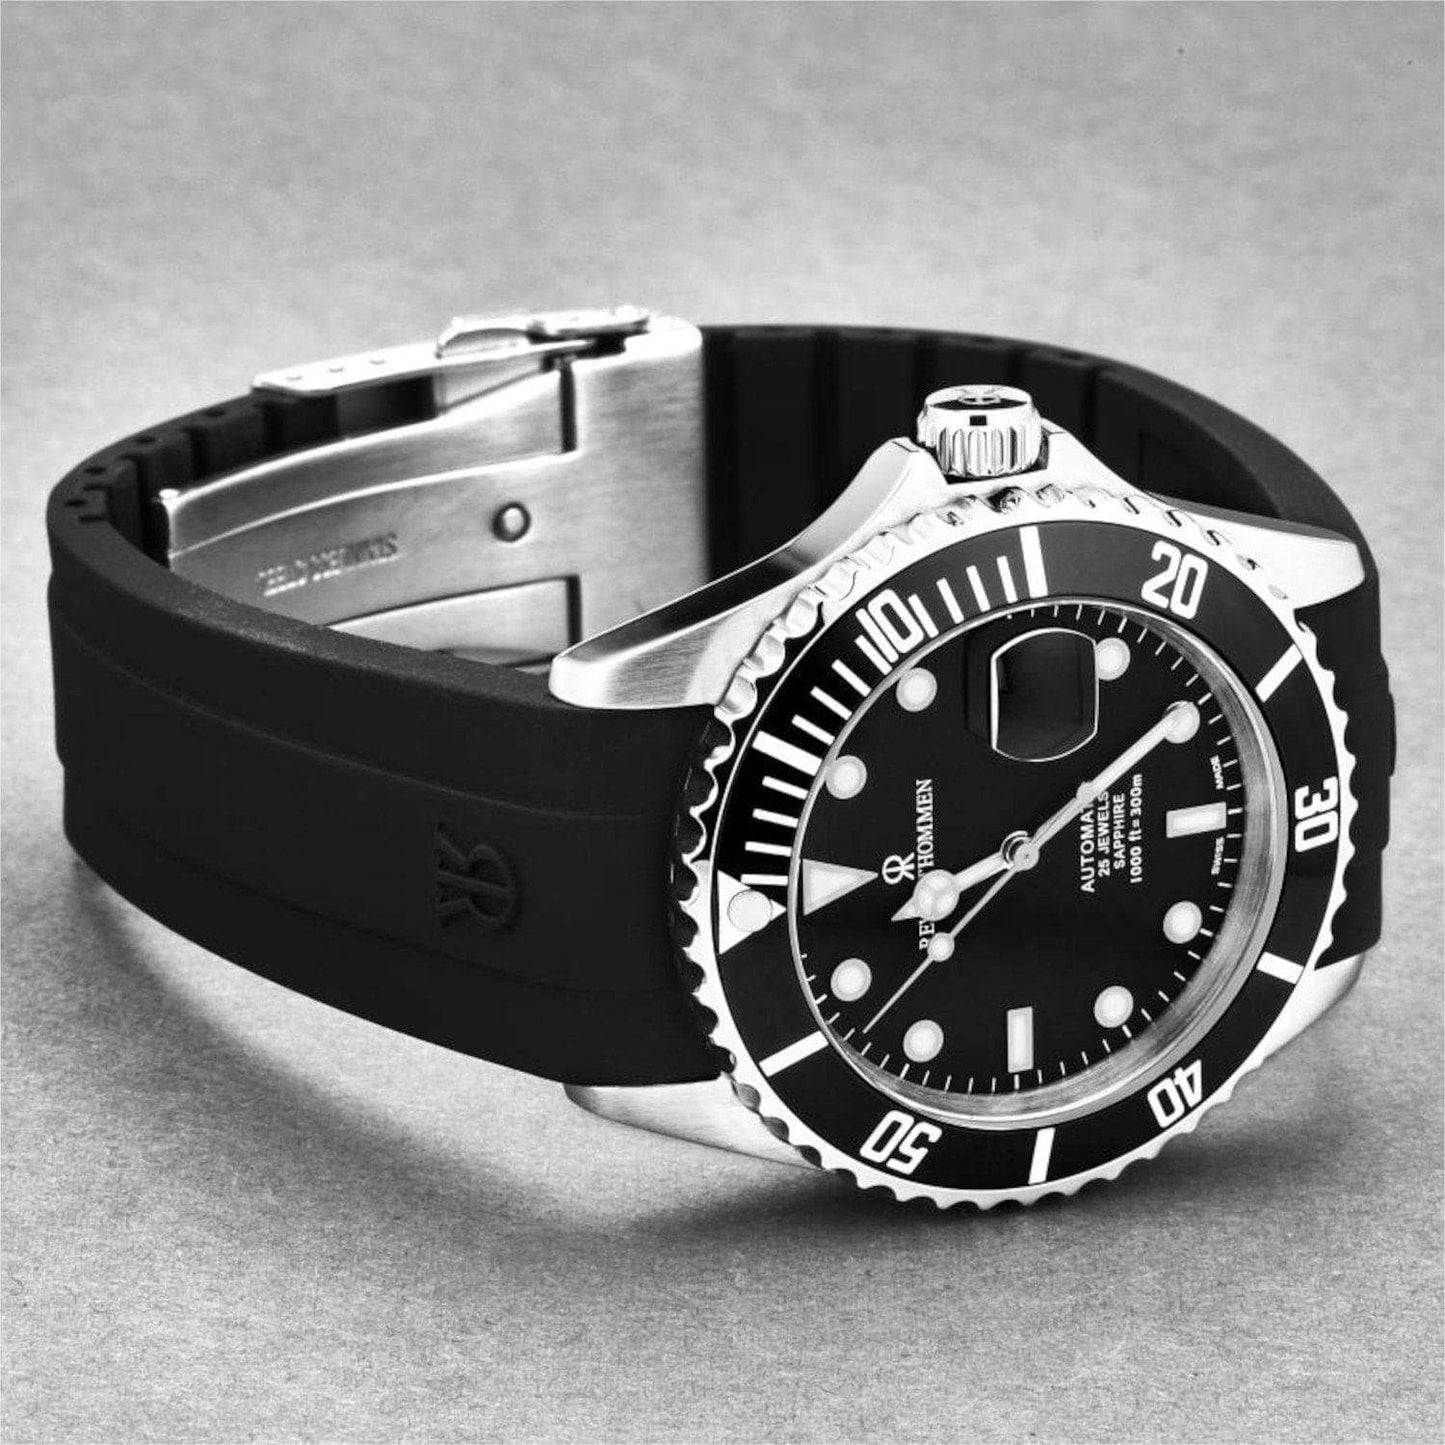 Revue Thommen 17571.2837 Men's 'Diver' Black Dial Rubber Strap Swiss Automatic Watch